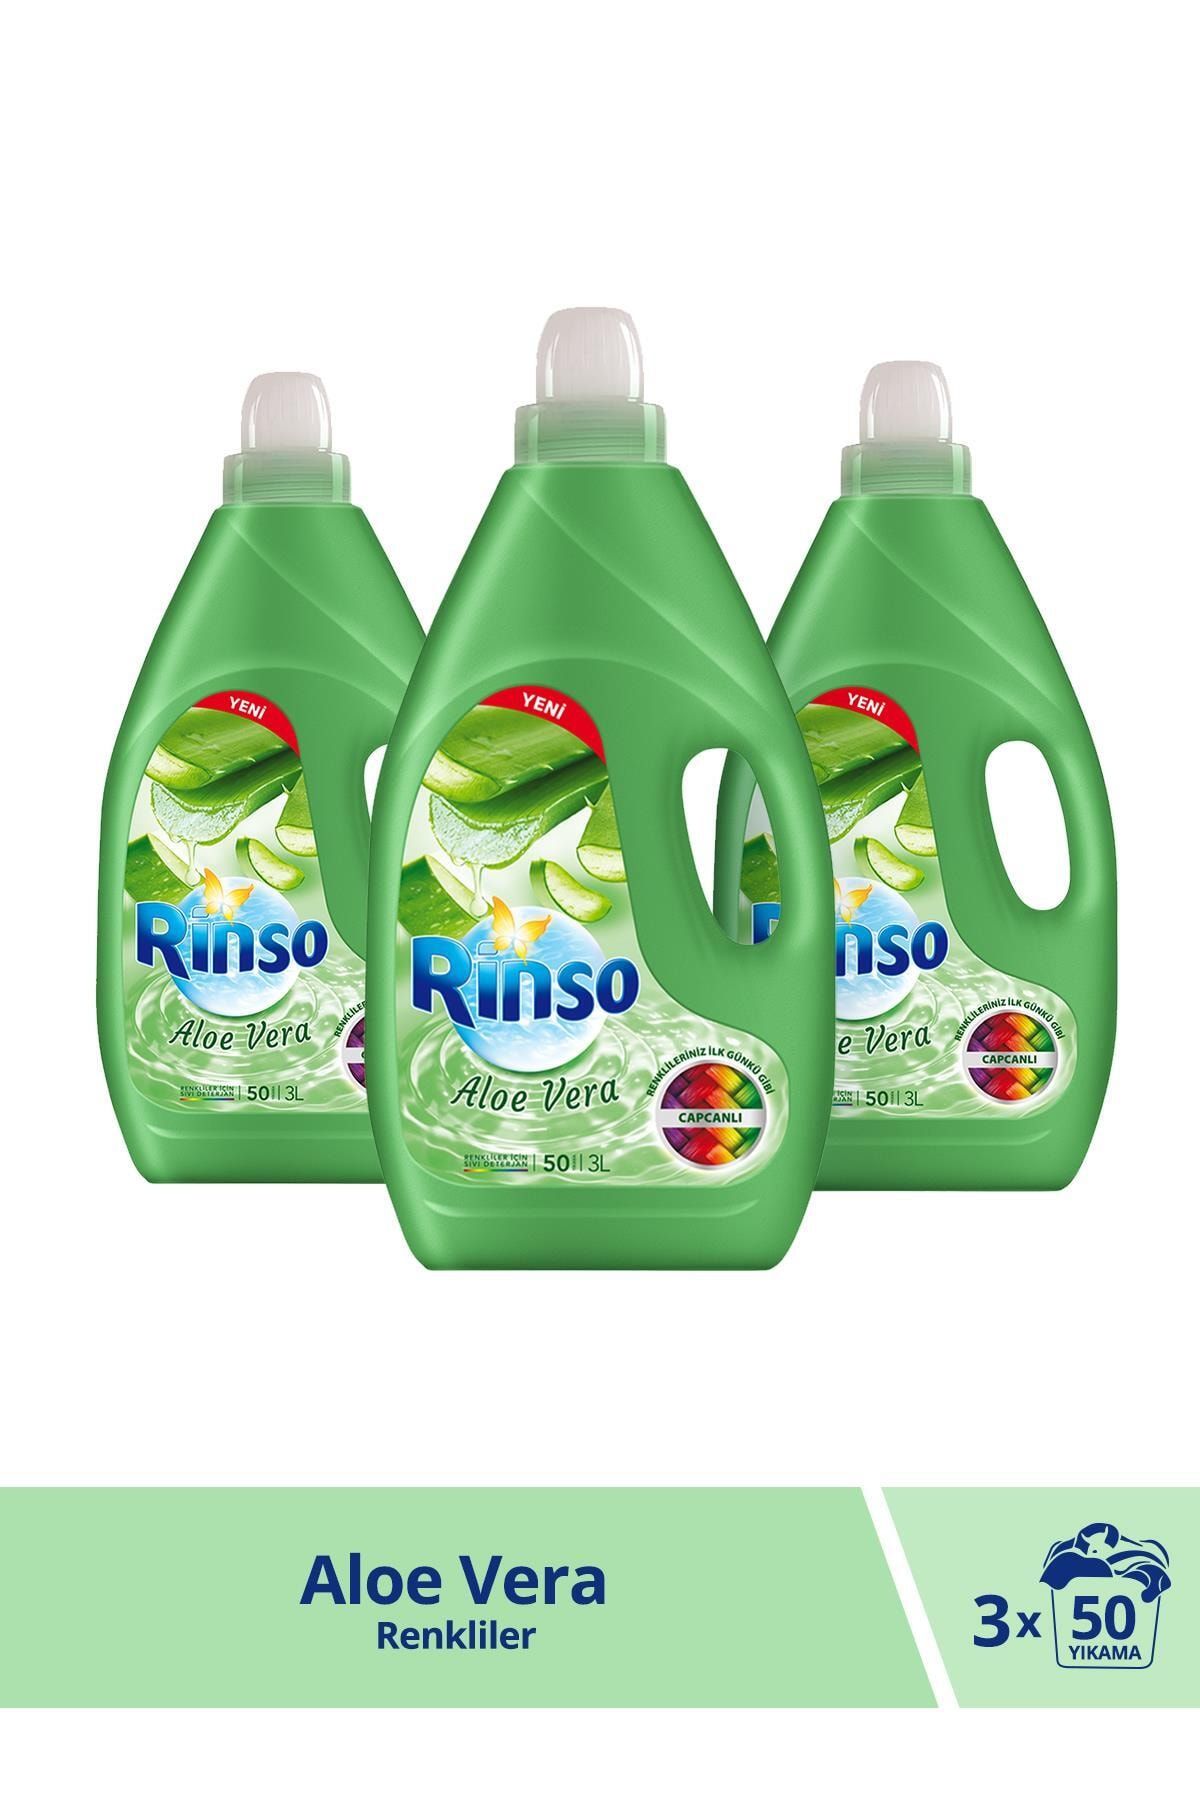 Rinso Aloe Vera Renkliler için Sıvı Çamaşır Deterjanı 3000 ML 50 Yıkama x 3 Adet